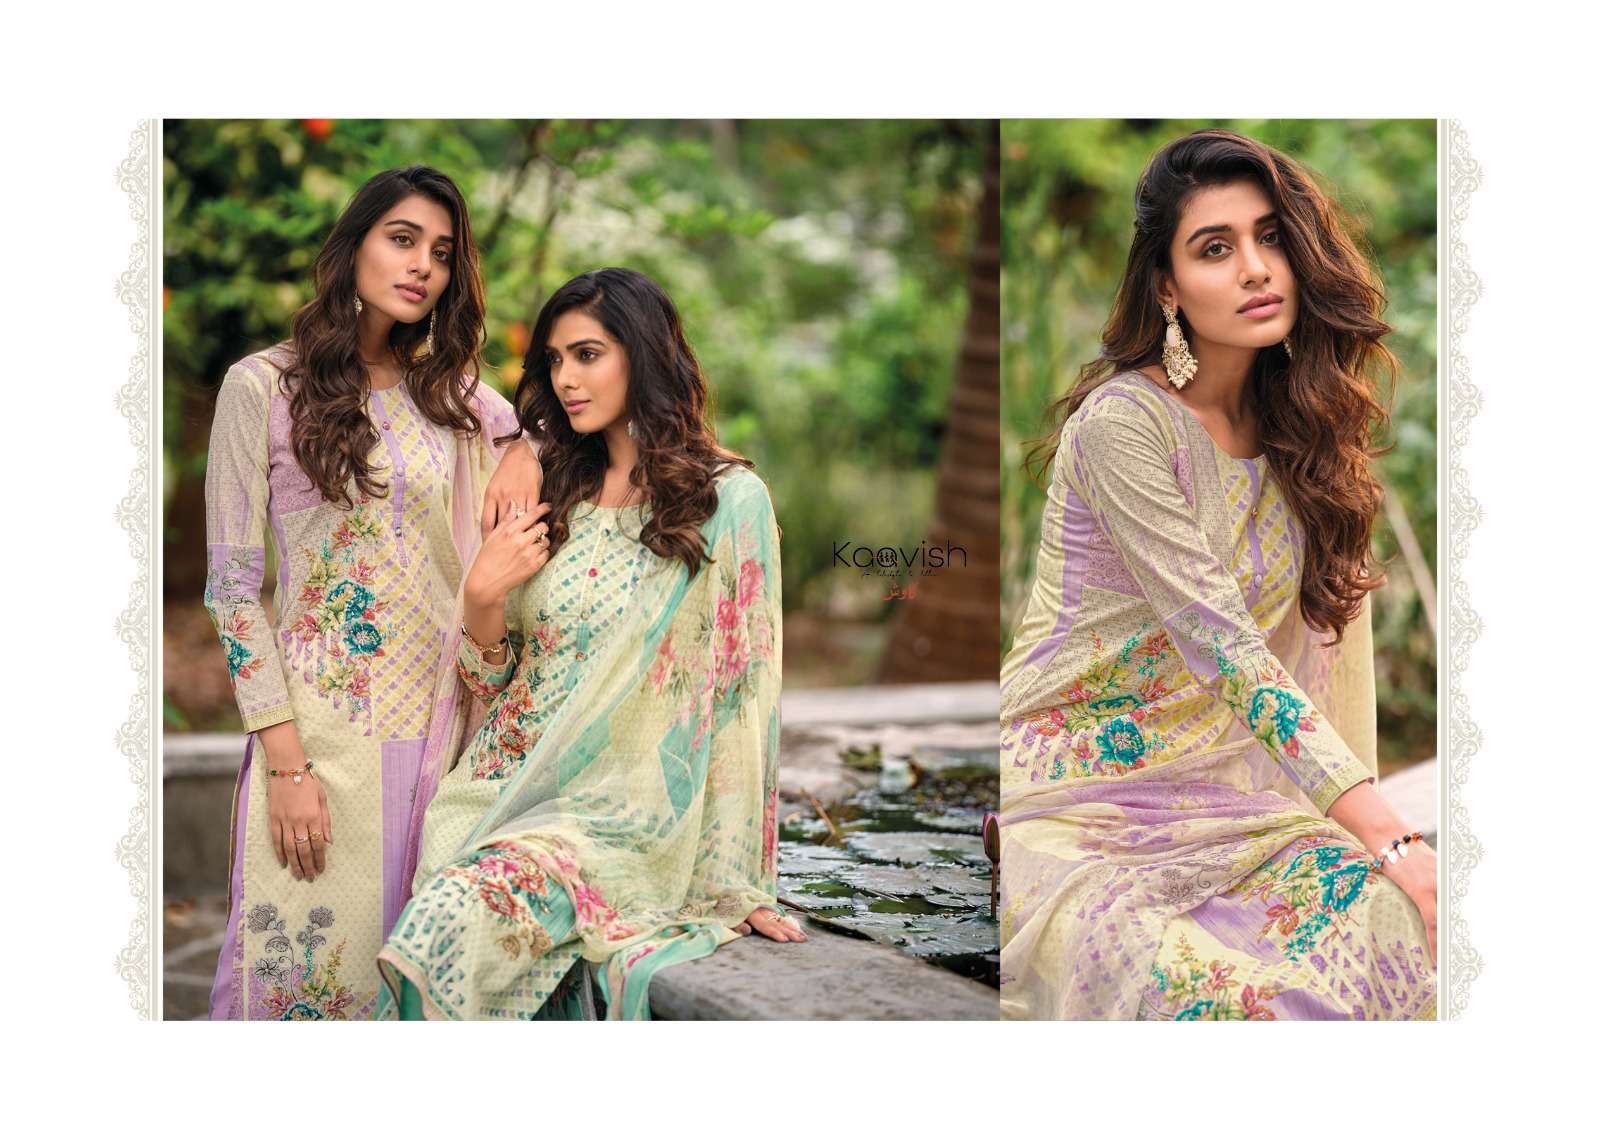 kaavish fashion naimat 661-666 series fancy designer salwar kameez catalogue wholesaler surat